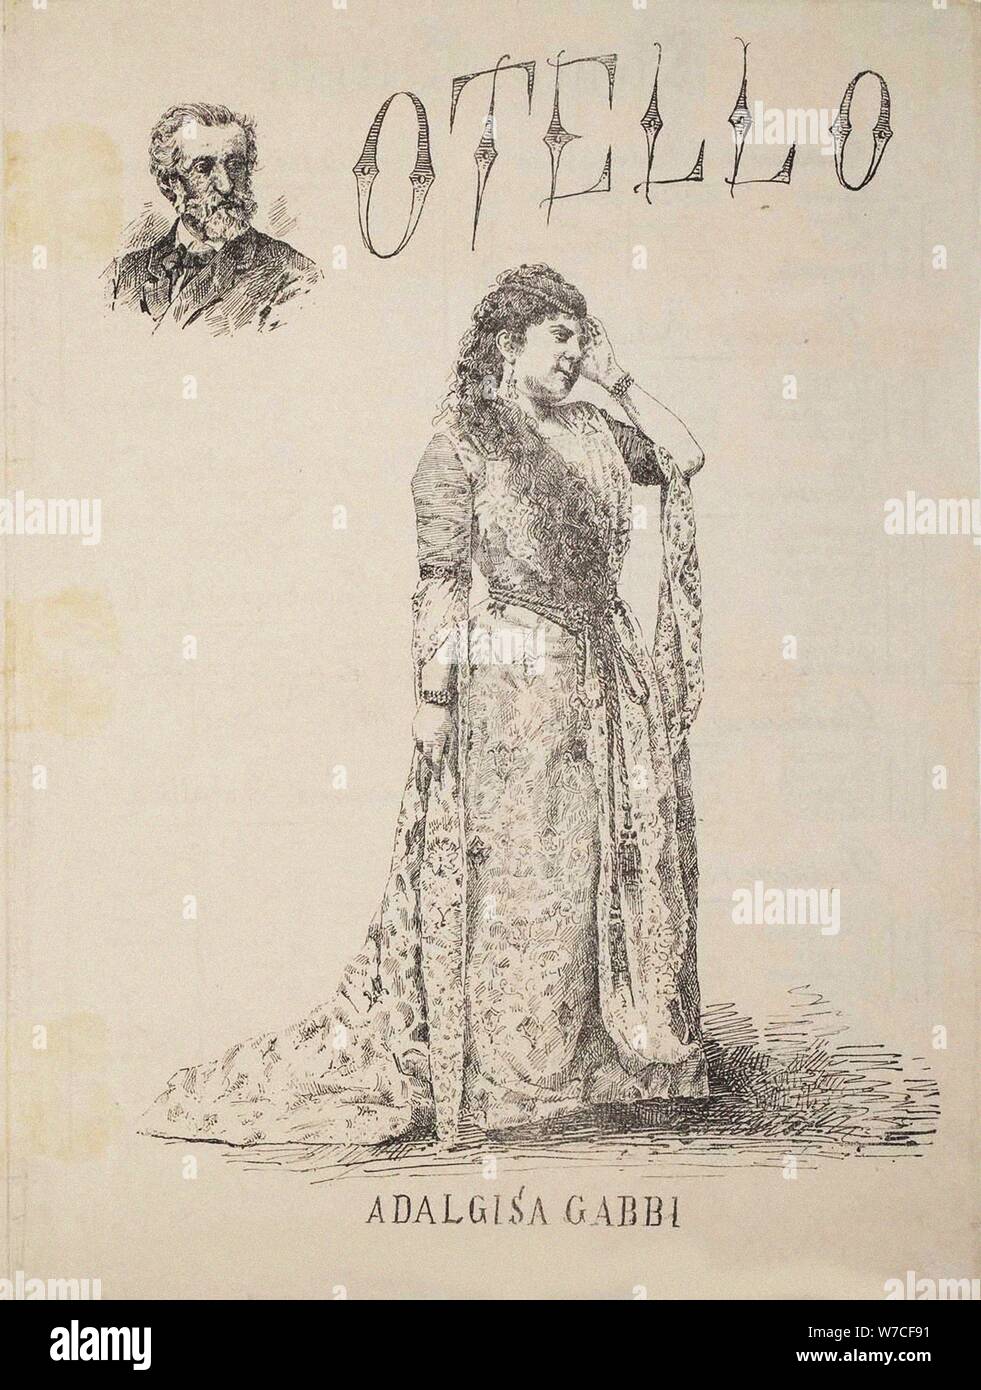 Adalgisa Gabbi (1857-1933) as Desdemona in Opera Otello by Giuseppe Verdi, . Stock Photo